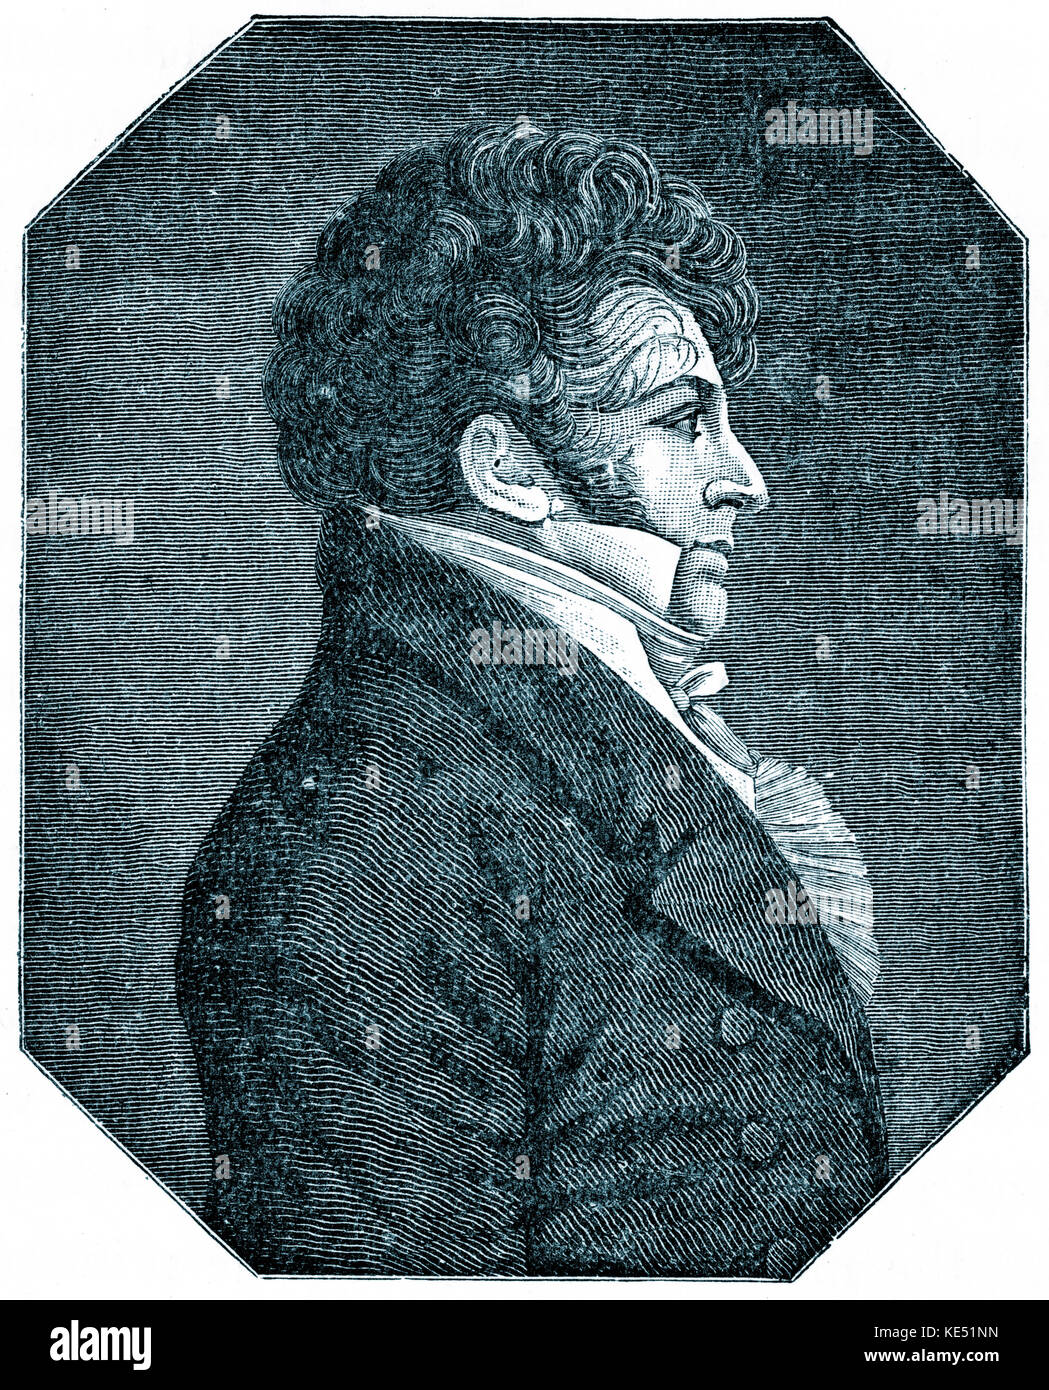 Francois Adrien Boieldieu - Ritratto del francese opera compositore. 16 Dicembre 1775 - 8 ottobre 1834. Foto Stock